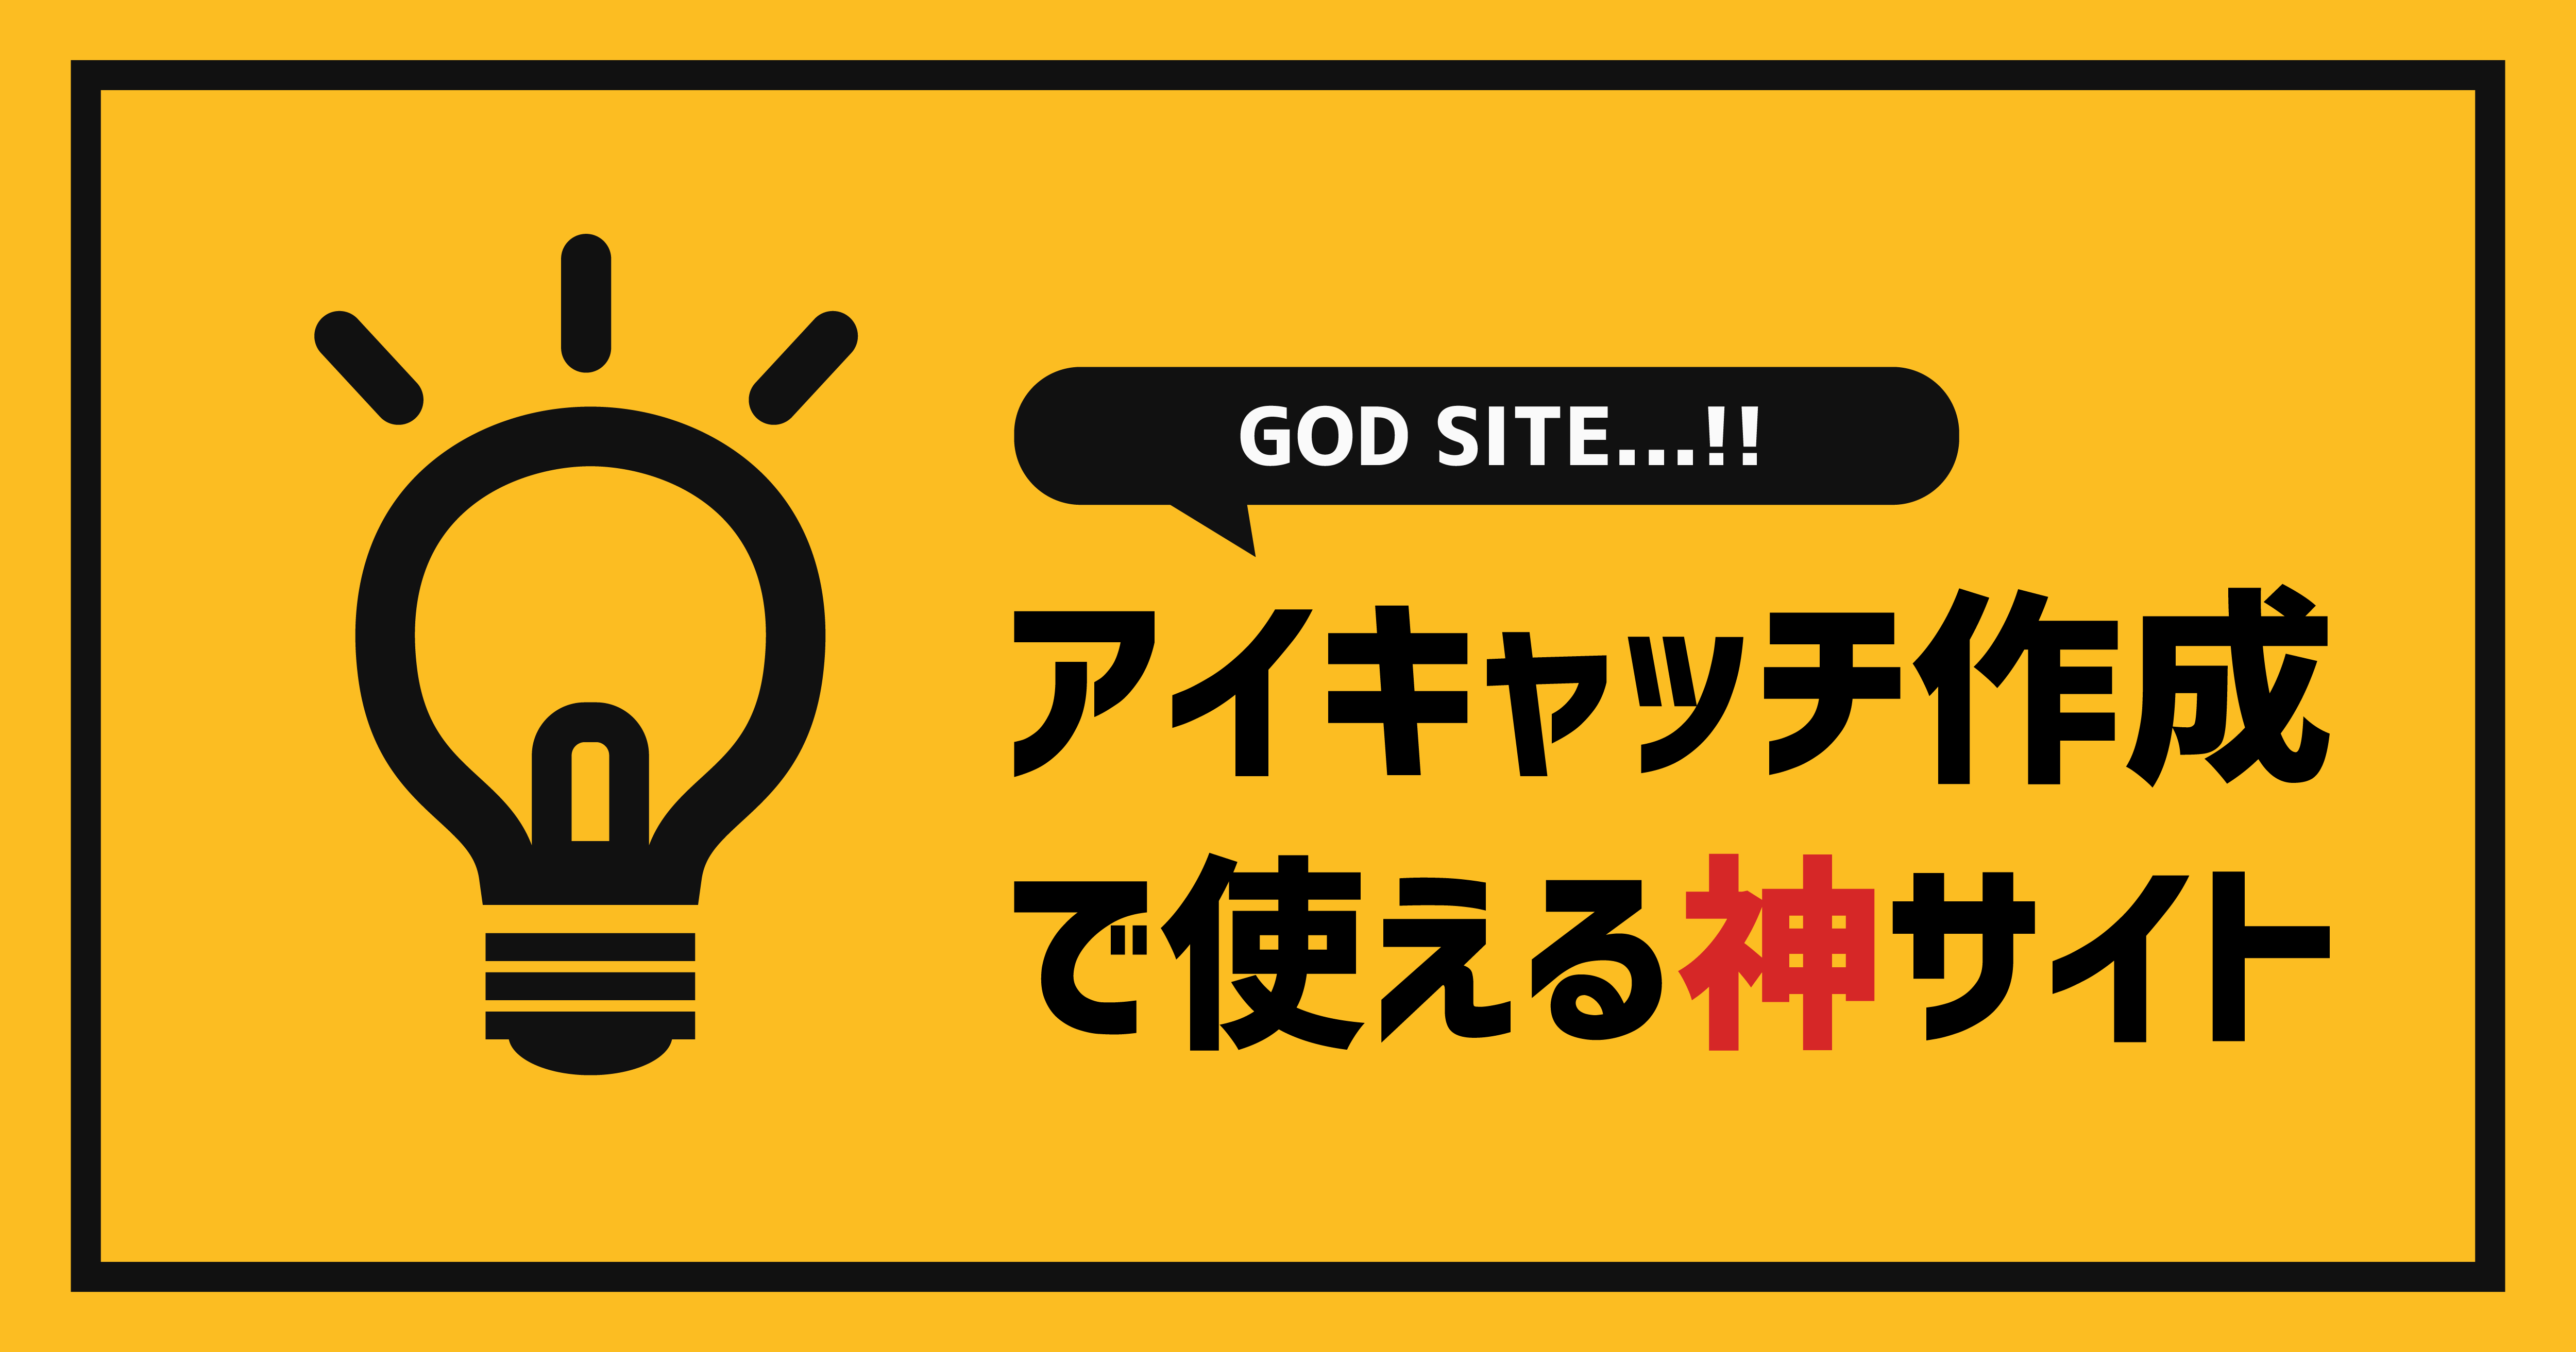 アイキャッチ作成で使える神サイト